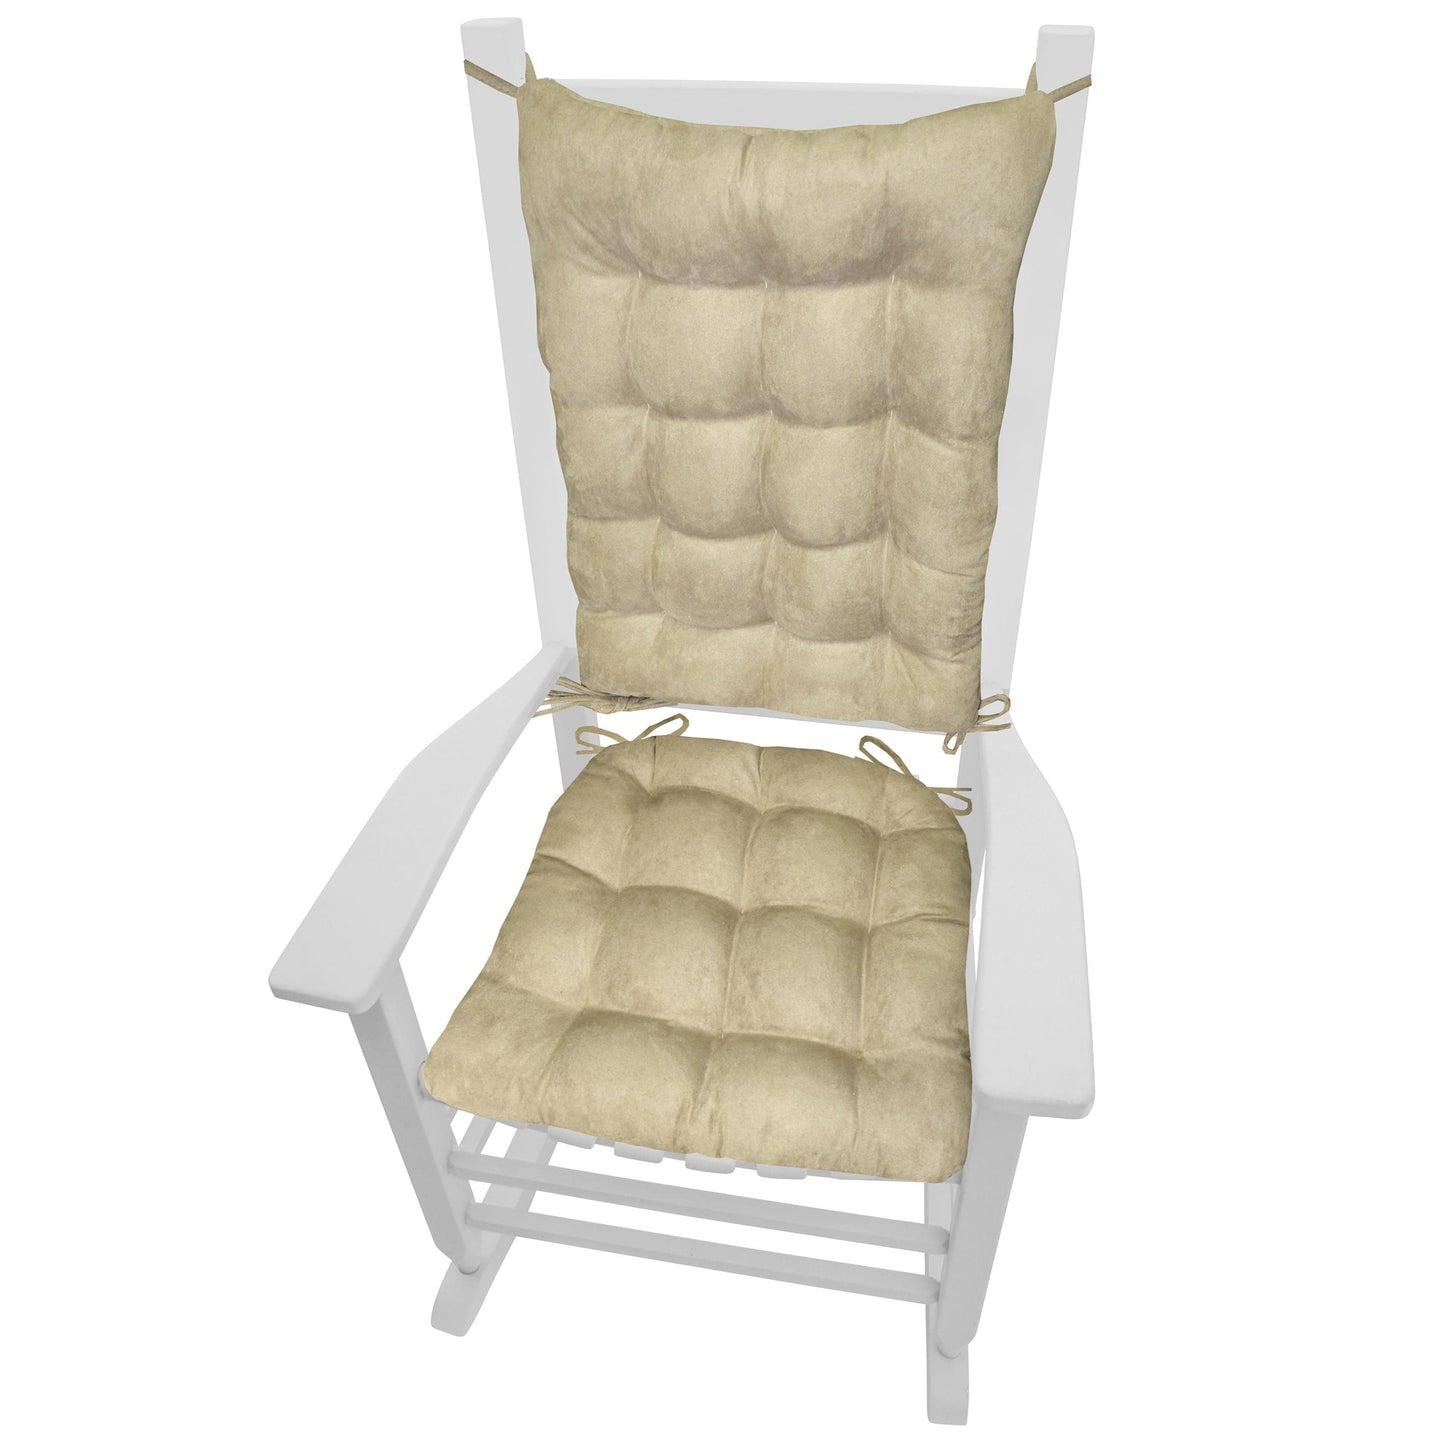 Wilderness Summit Lake Rocking Chair Cushions - Latex Foam Fill